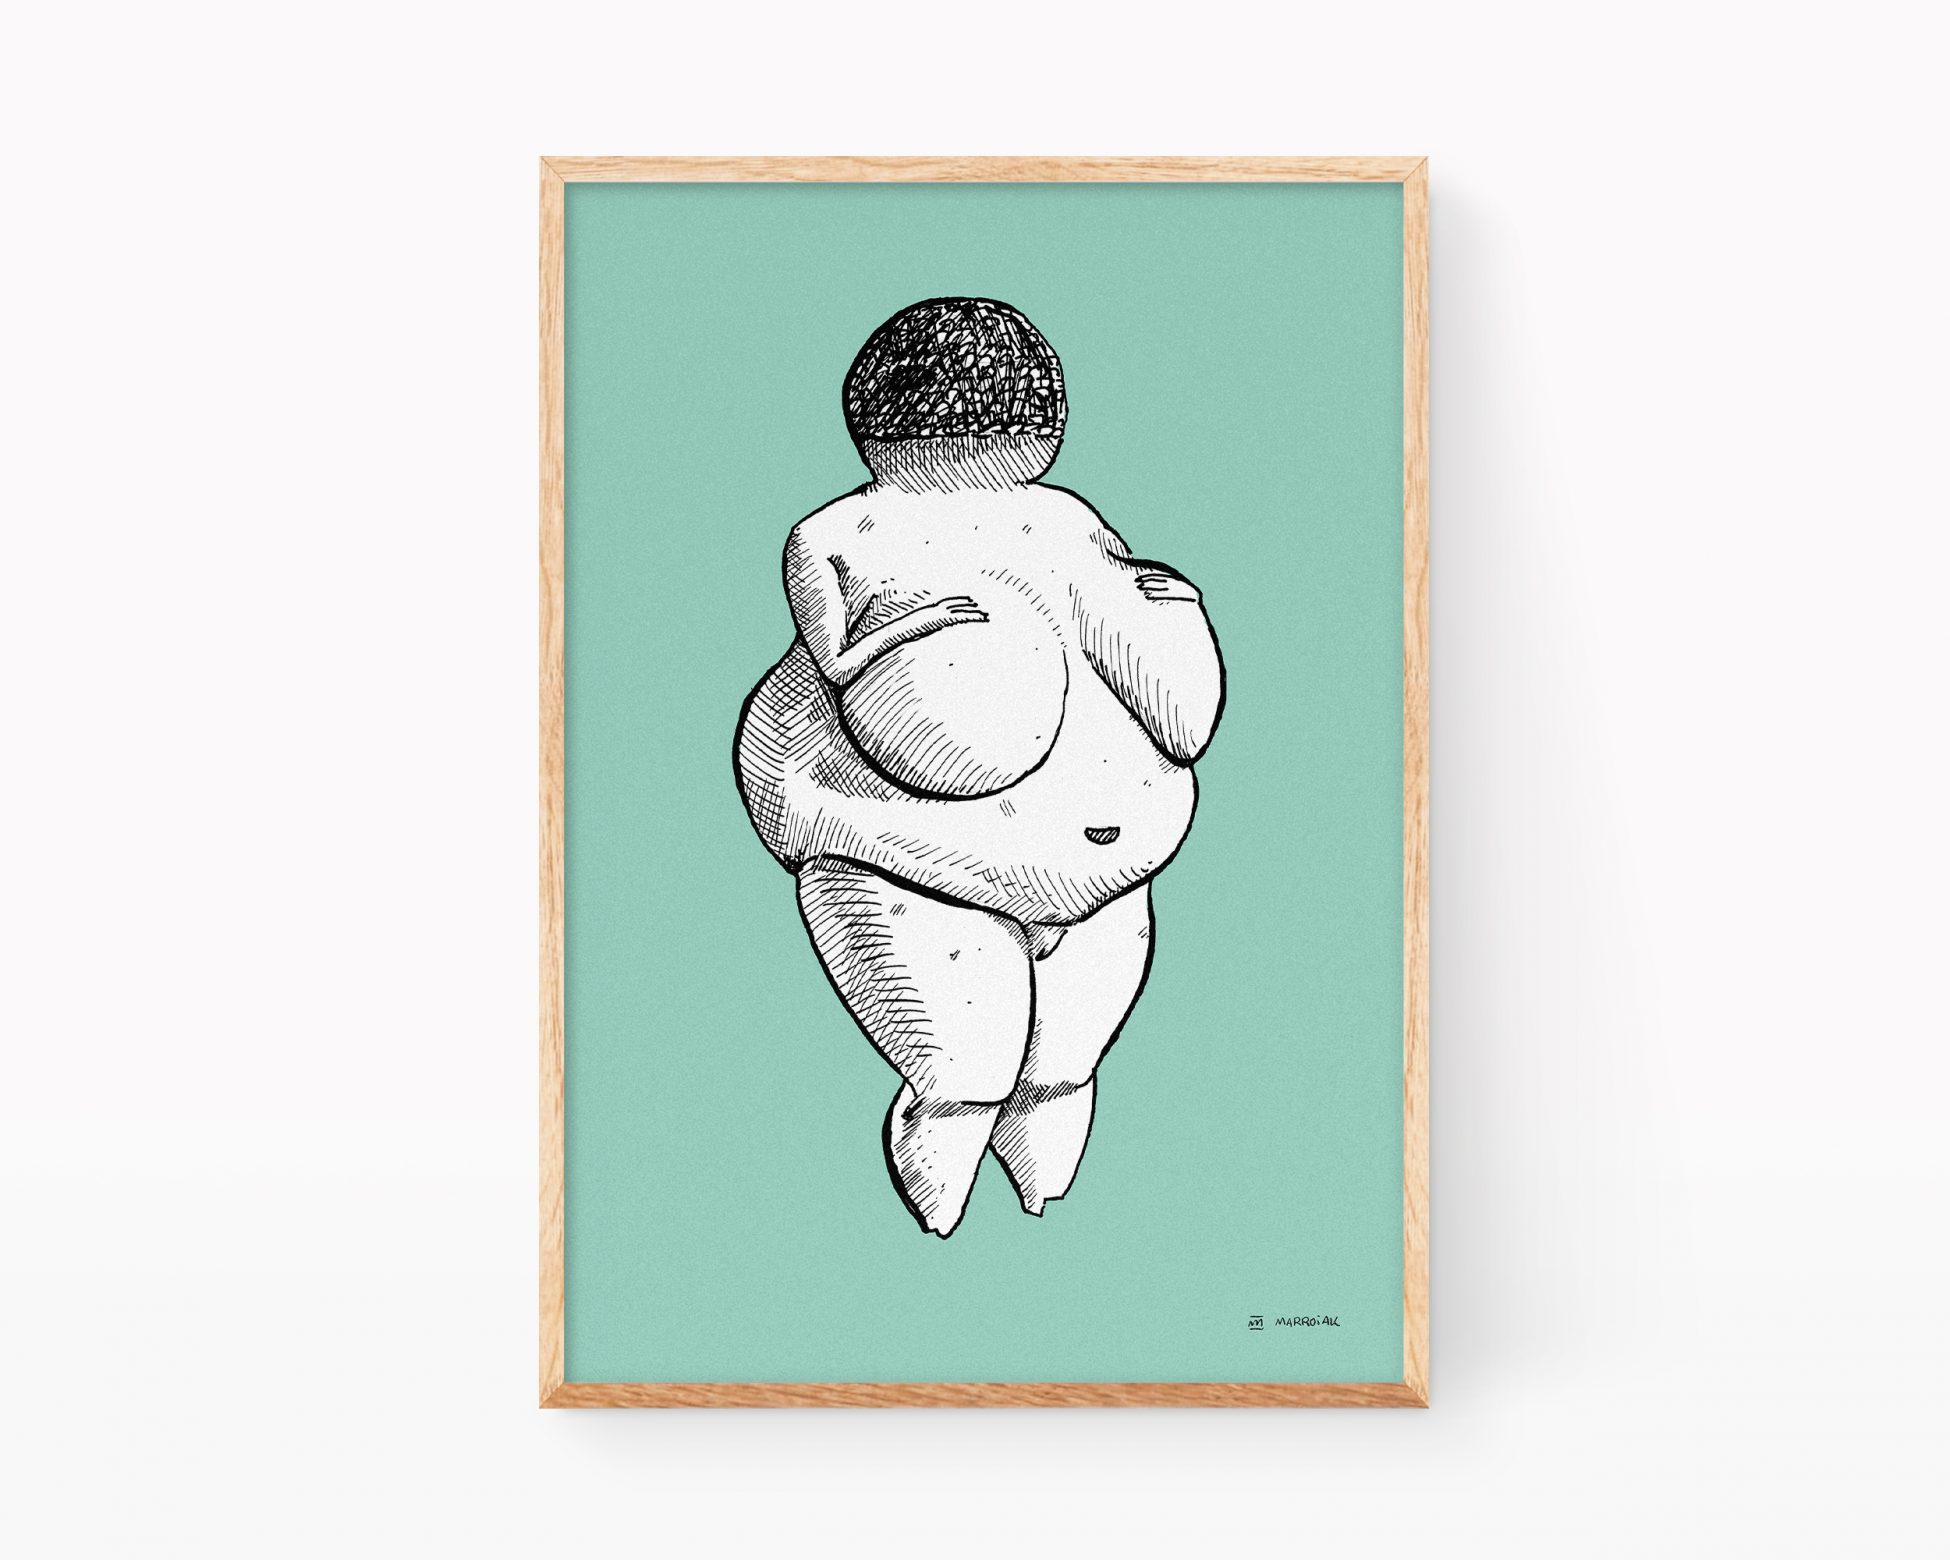 Lámina turquesa Venus de Willendorf. Cuadro decorativo para enmarcar con una ilustración de la escultura de arte primitivo de una mujer embarazada, símbolo de la fertilidad. Dibujos minimalistas en blanco y negro.